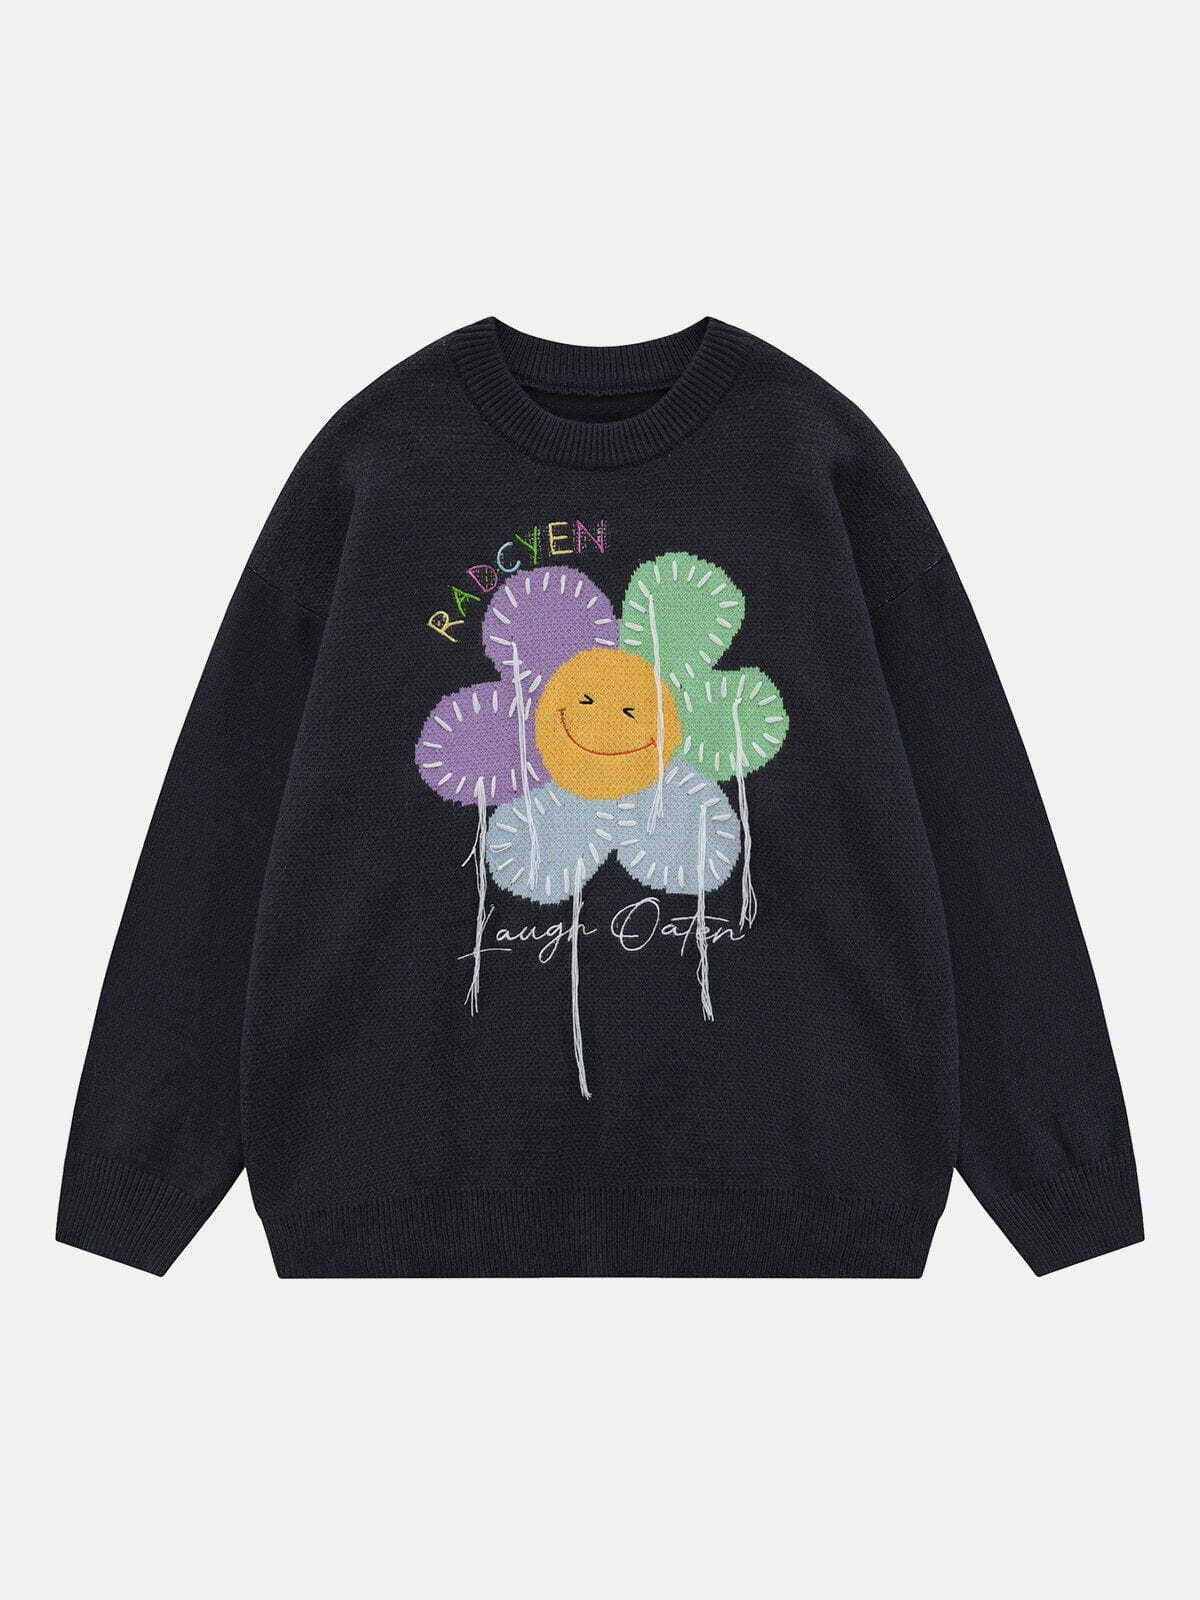 graphic sunflower sweater retro streetwear statement 8187